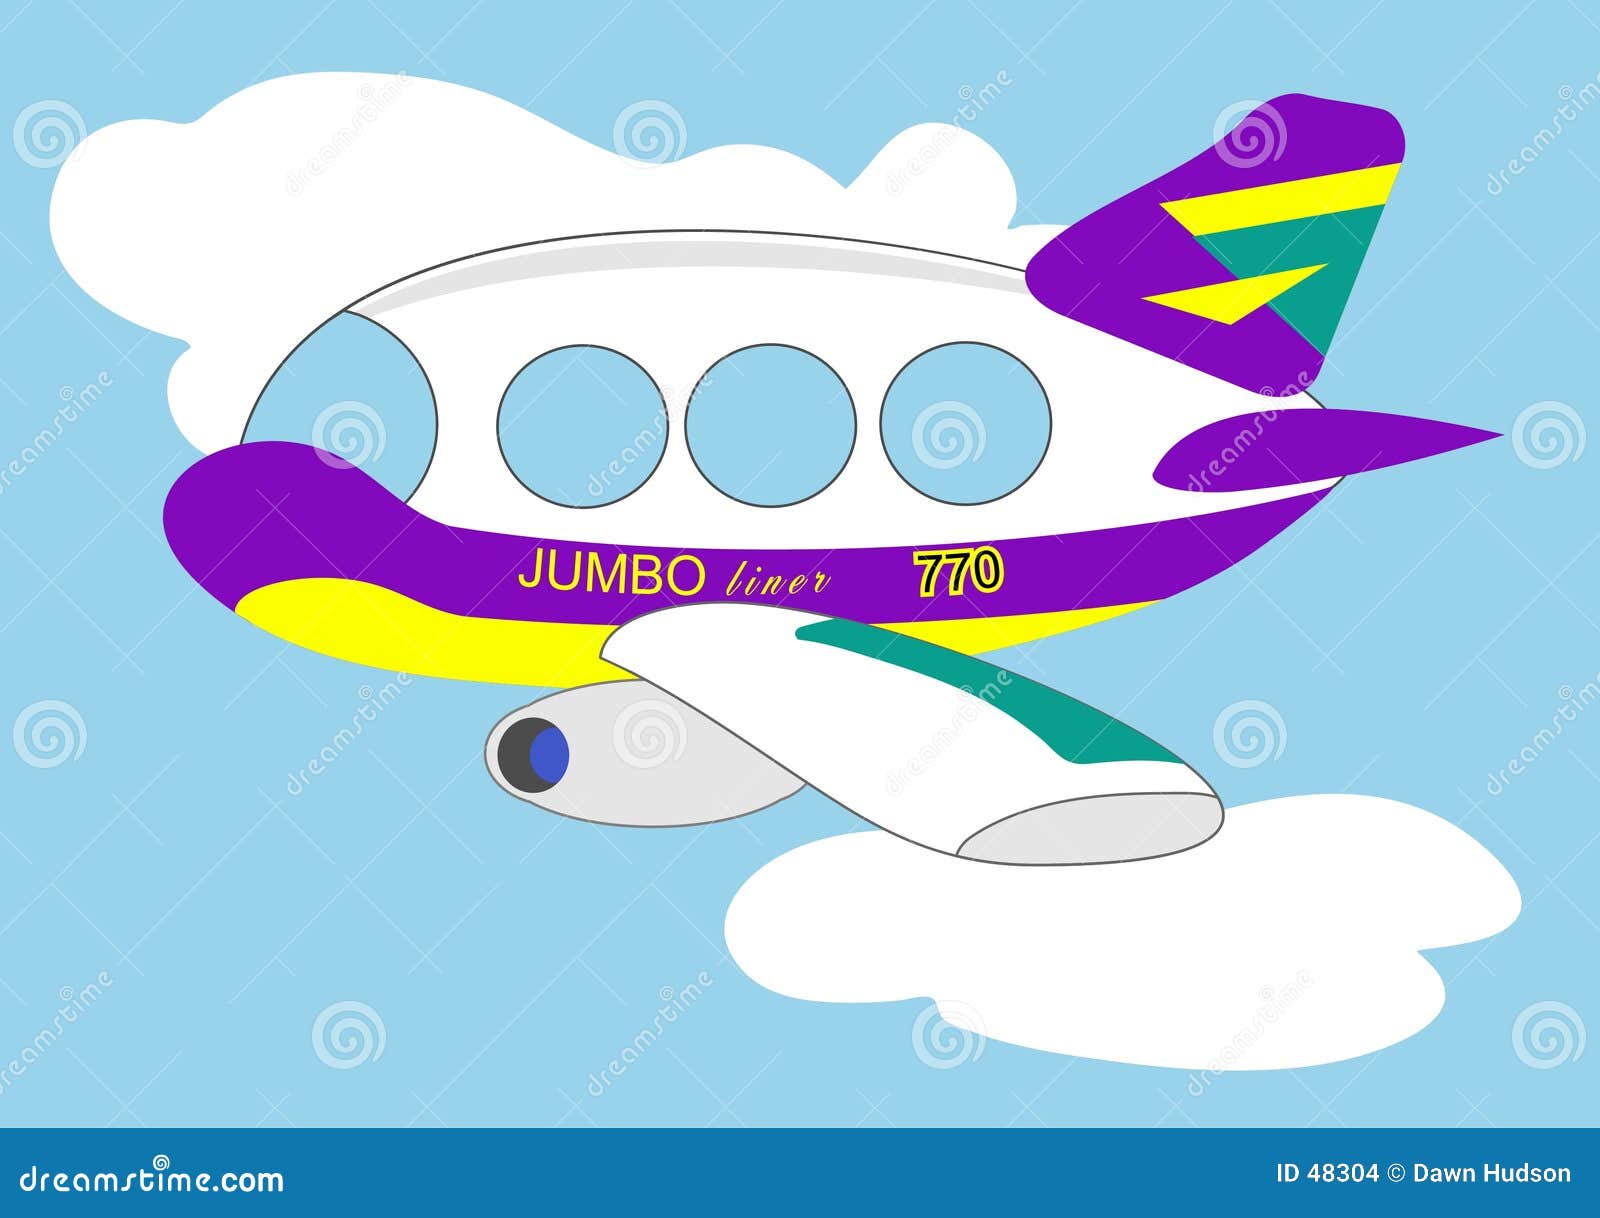 Jumbo Jet stock vector. Illustration of jumbo, clouds, travel - 48304